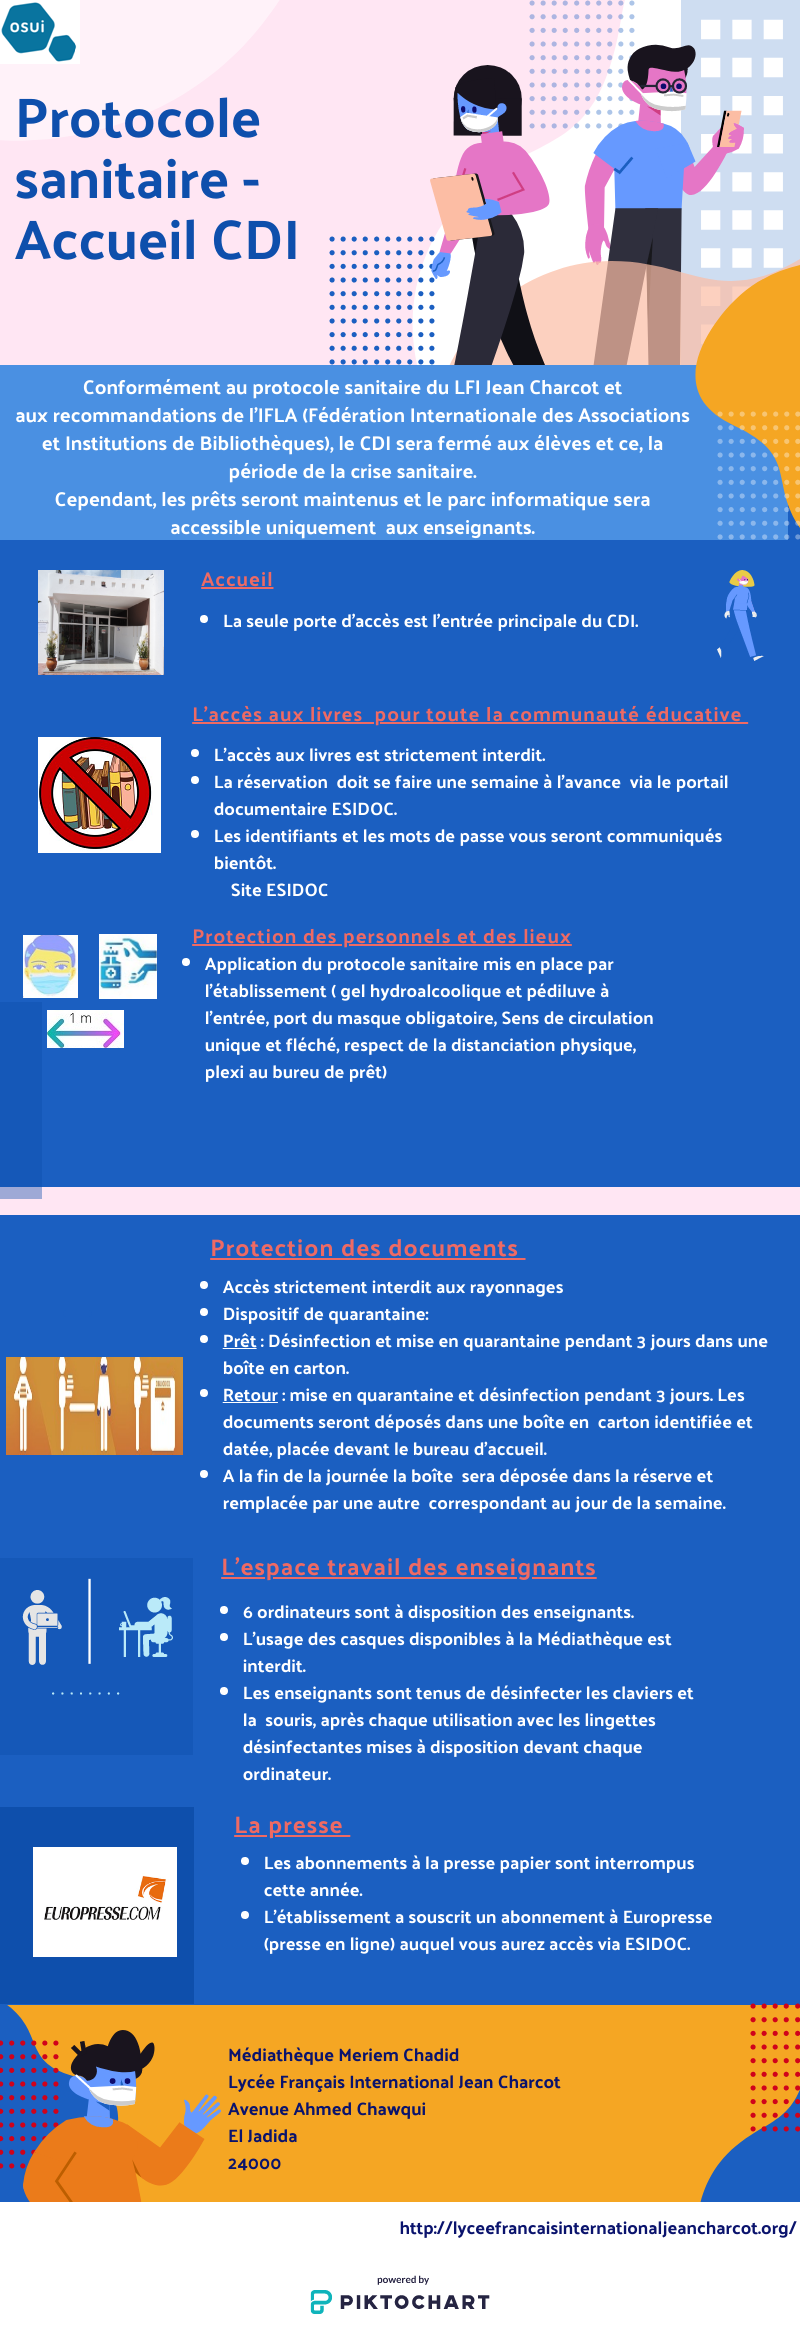 Protocole sanitaire de la médiathèque du LFI Jean Charcot